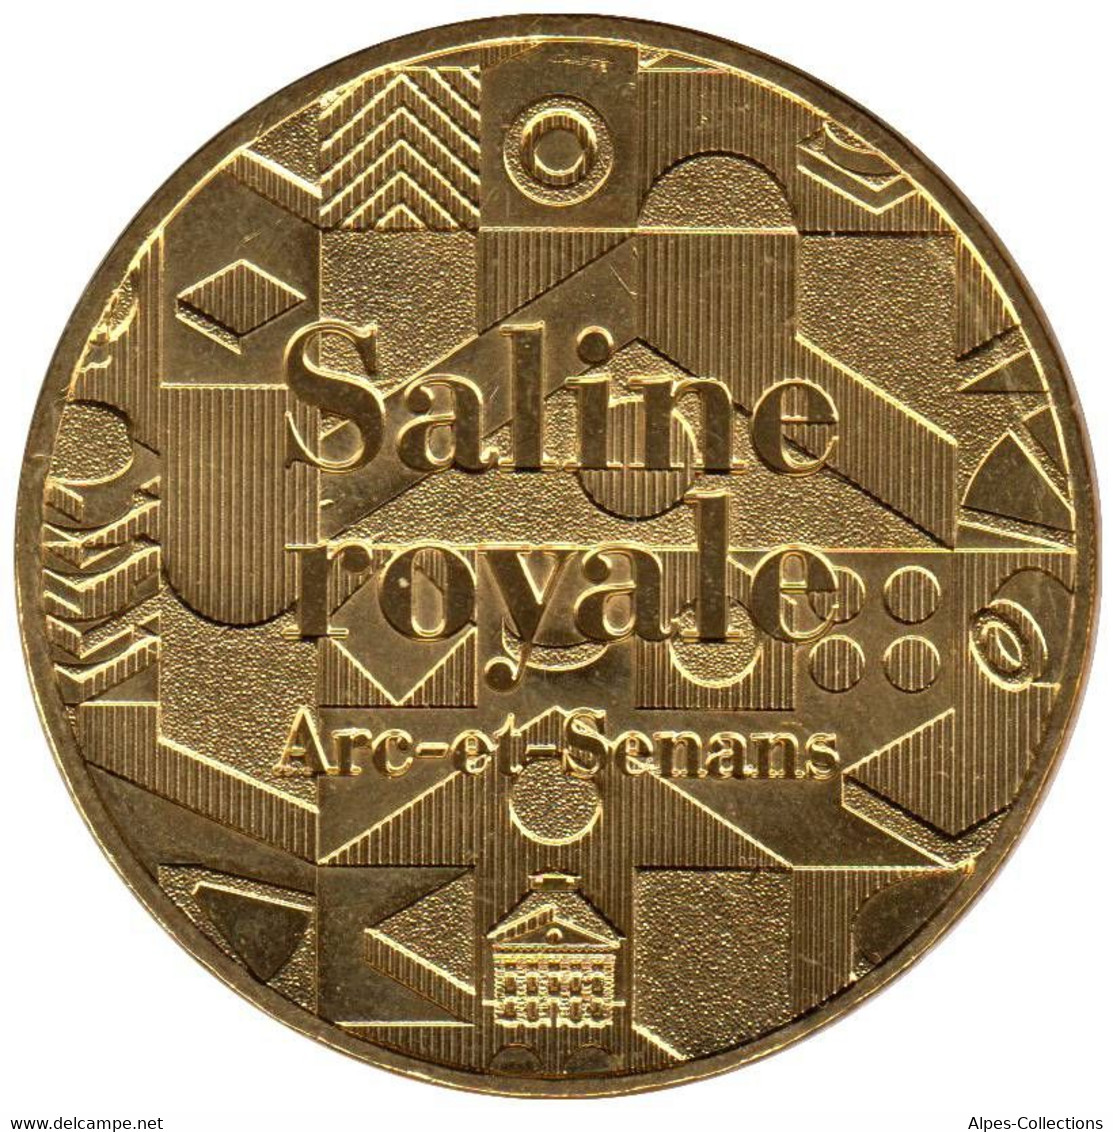 25-2051 - JETON TOURISTIQUE MDP - Saline Royale Arc Et Senans - 2015.2 - 2015